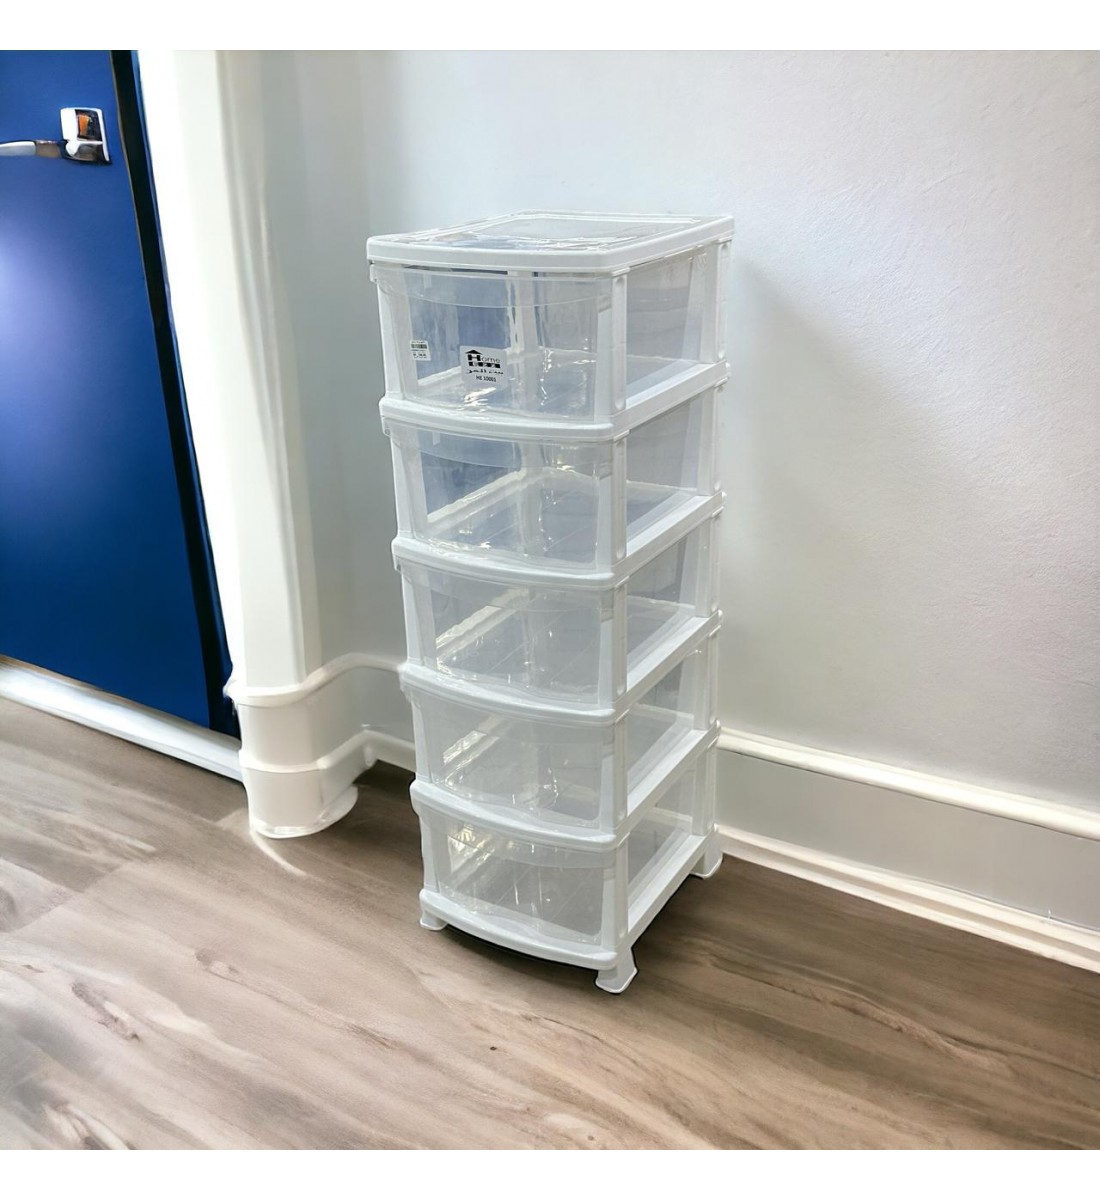 وحدة ادراج تخزين بلاستيك5 ادراج ابيض شفاف 47×37×115سم 